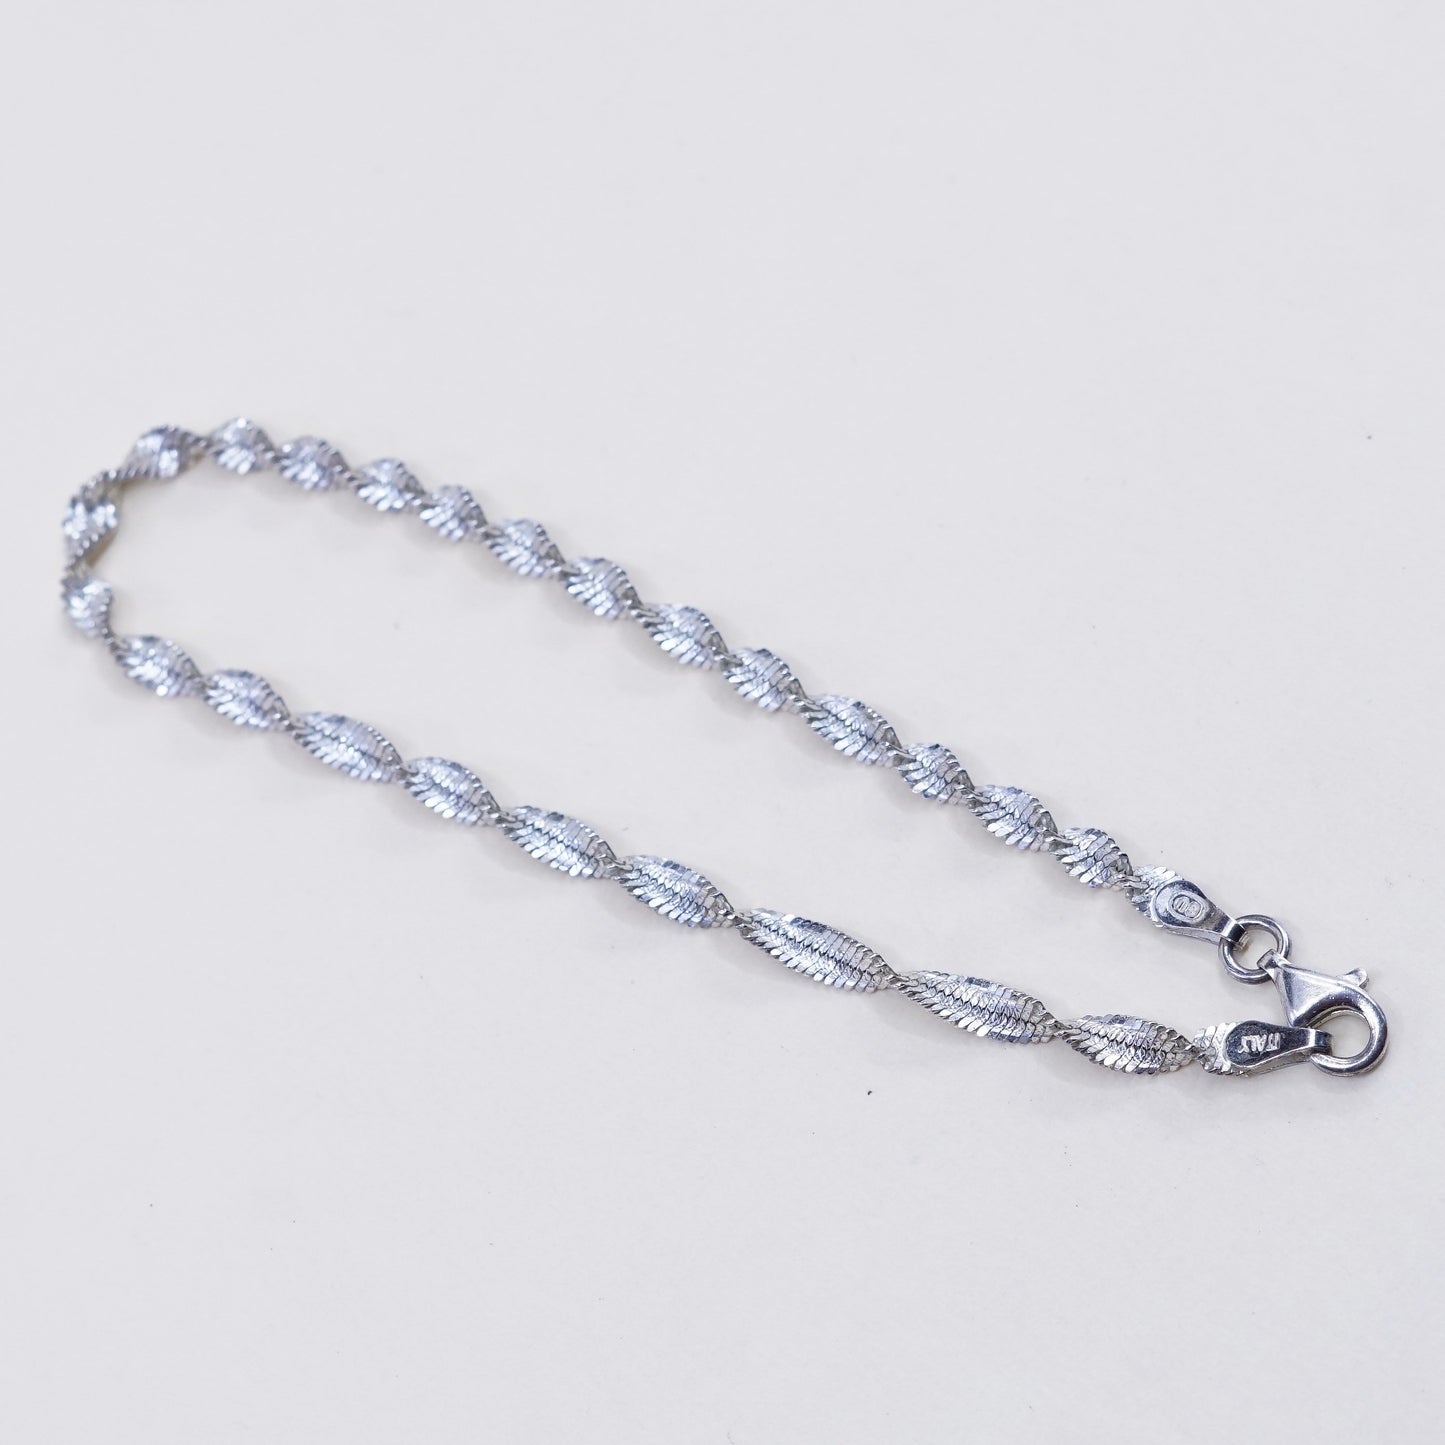 7”, 4mm, Vintage sterling silver bracelet, 925 twisted herringbone chain